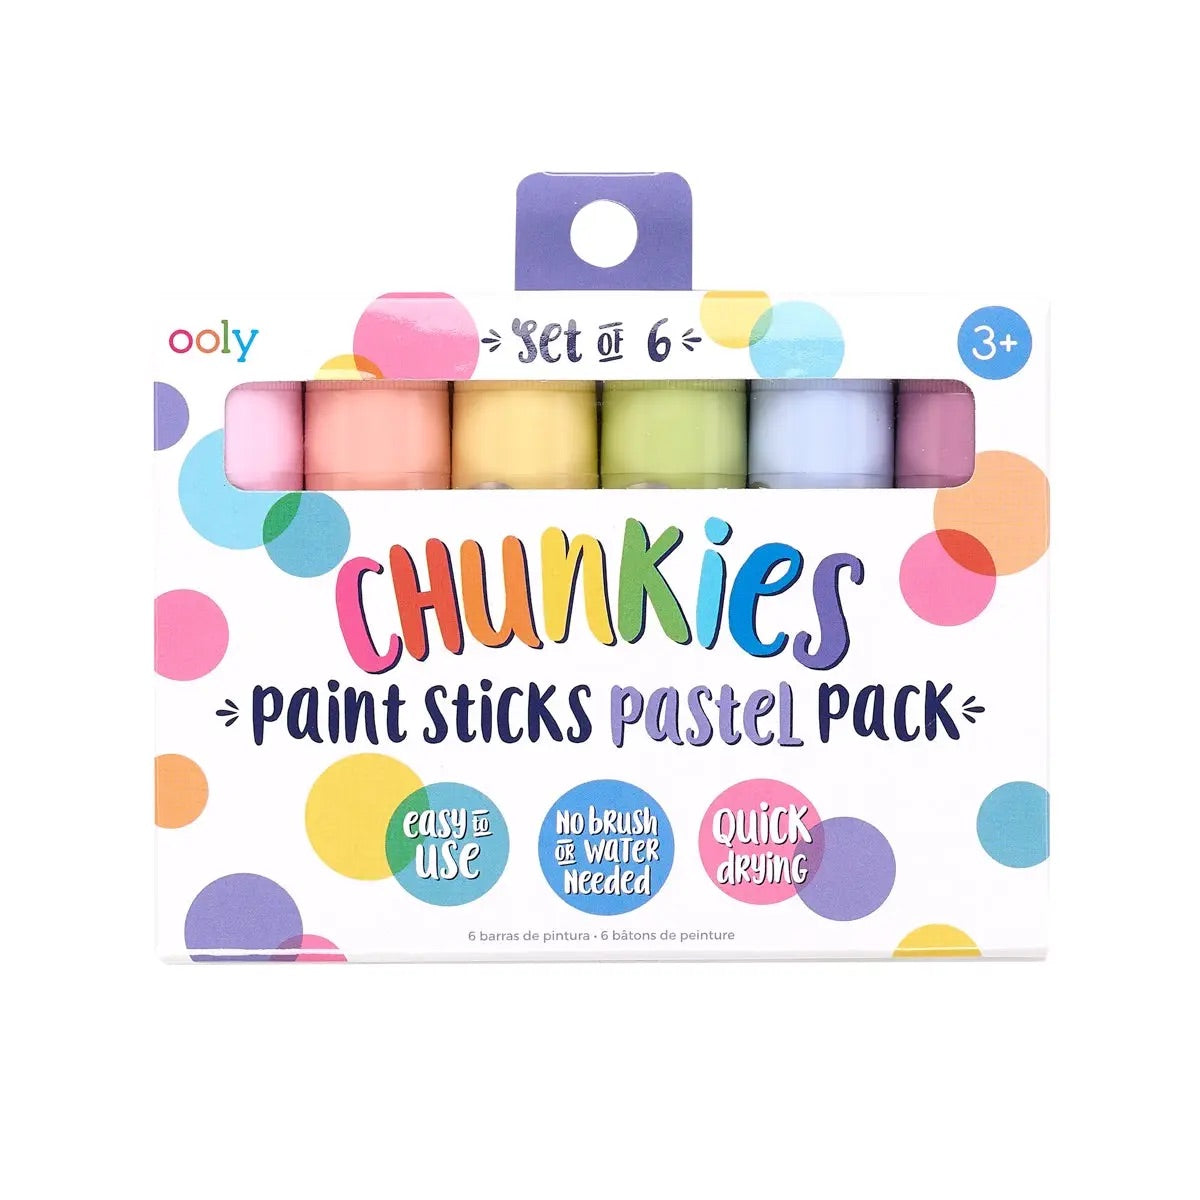 ooly chunkies pastel paint sticks